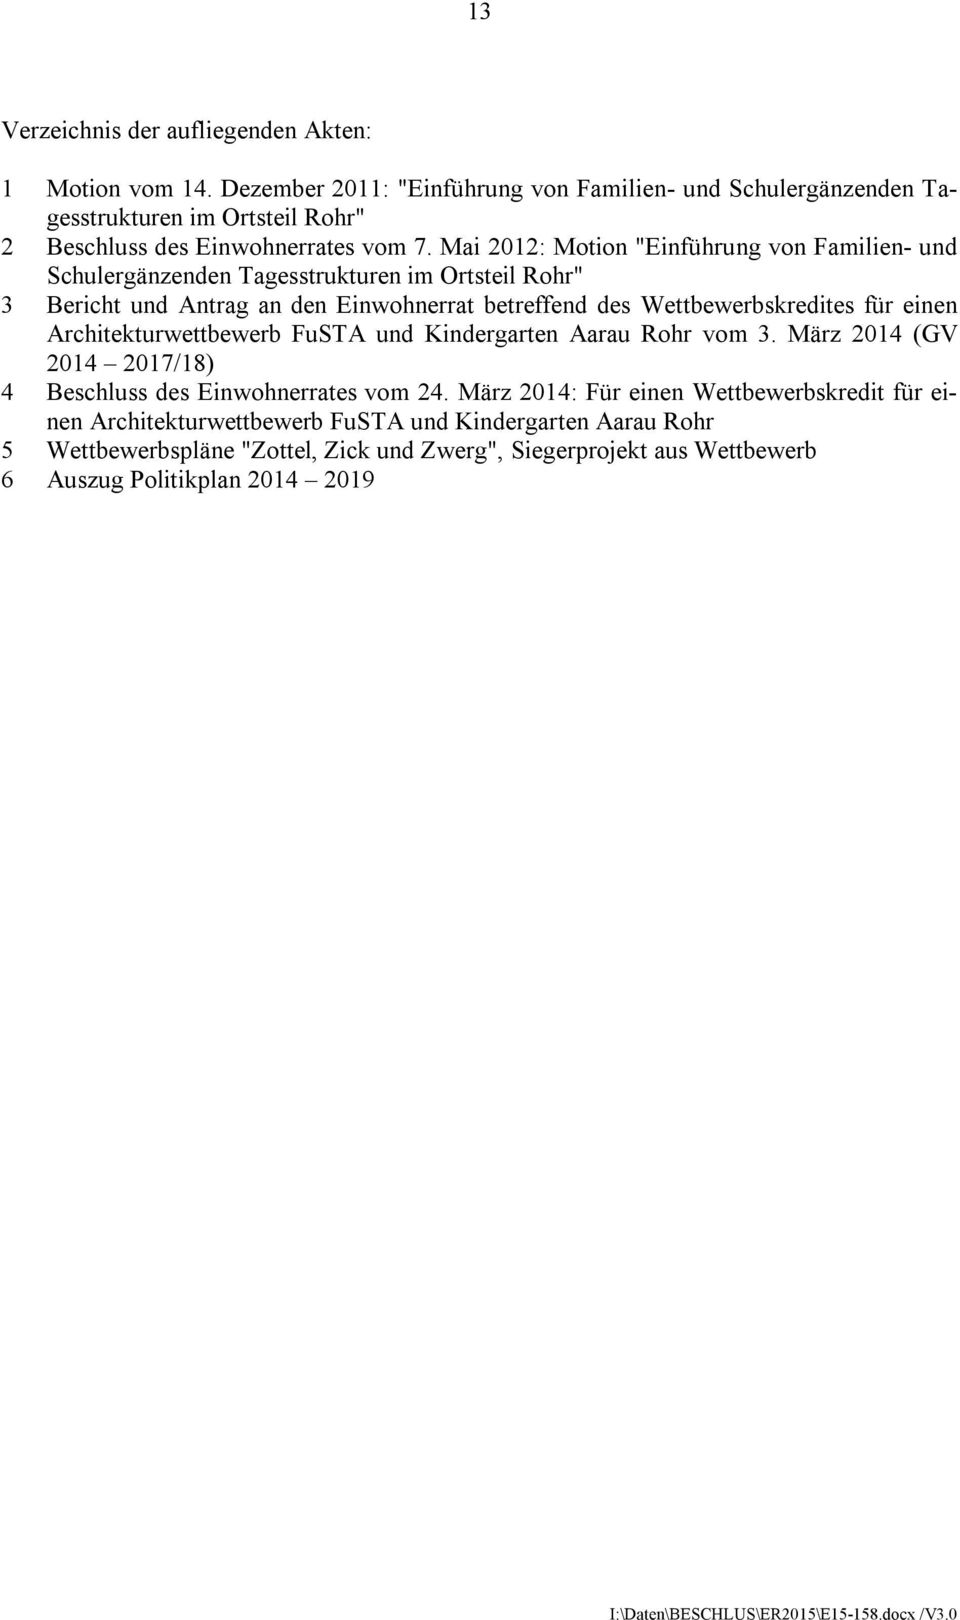 Mai 2012: Motion "Einführung von Familien- und Schulergänzenden Tagesstrukturen im Ortsteil Rohr" 3 Bericht und Antrag an den Einwohnerrat betreffend des Wettbewerbskredites für